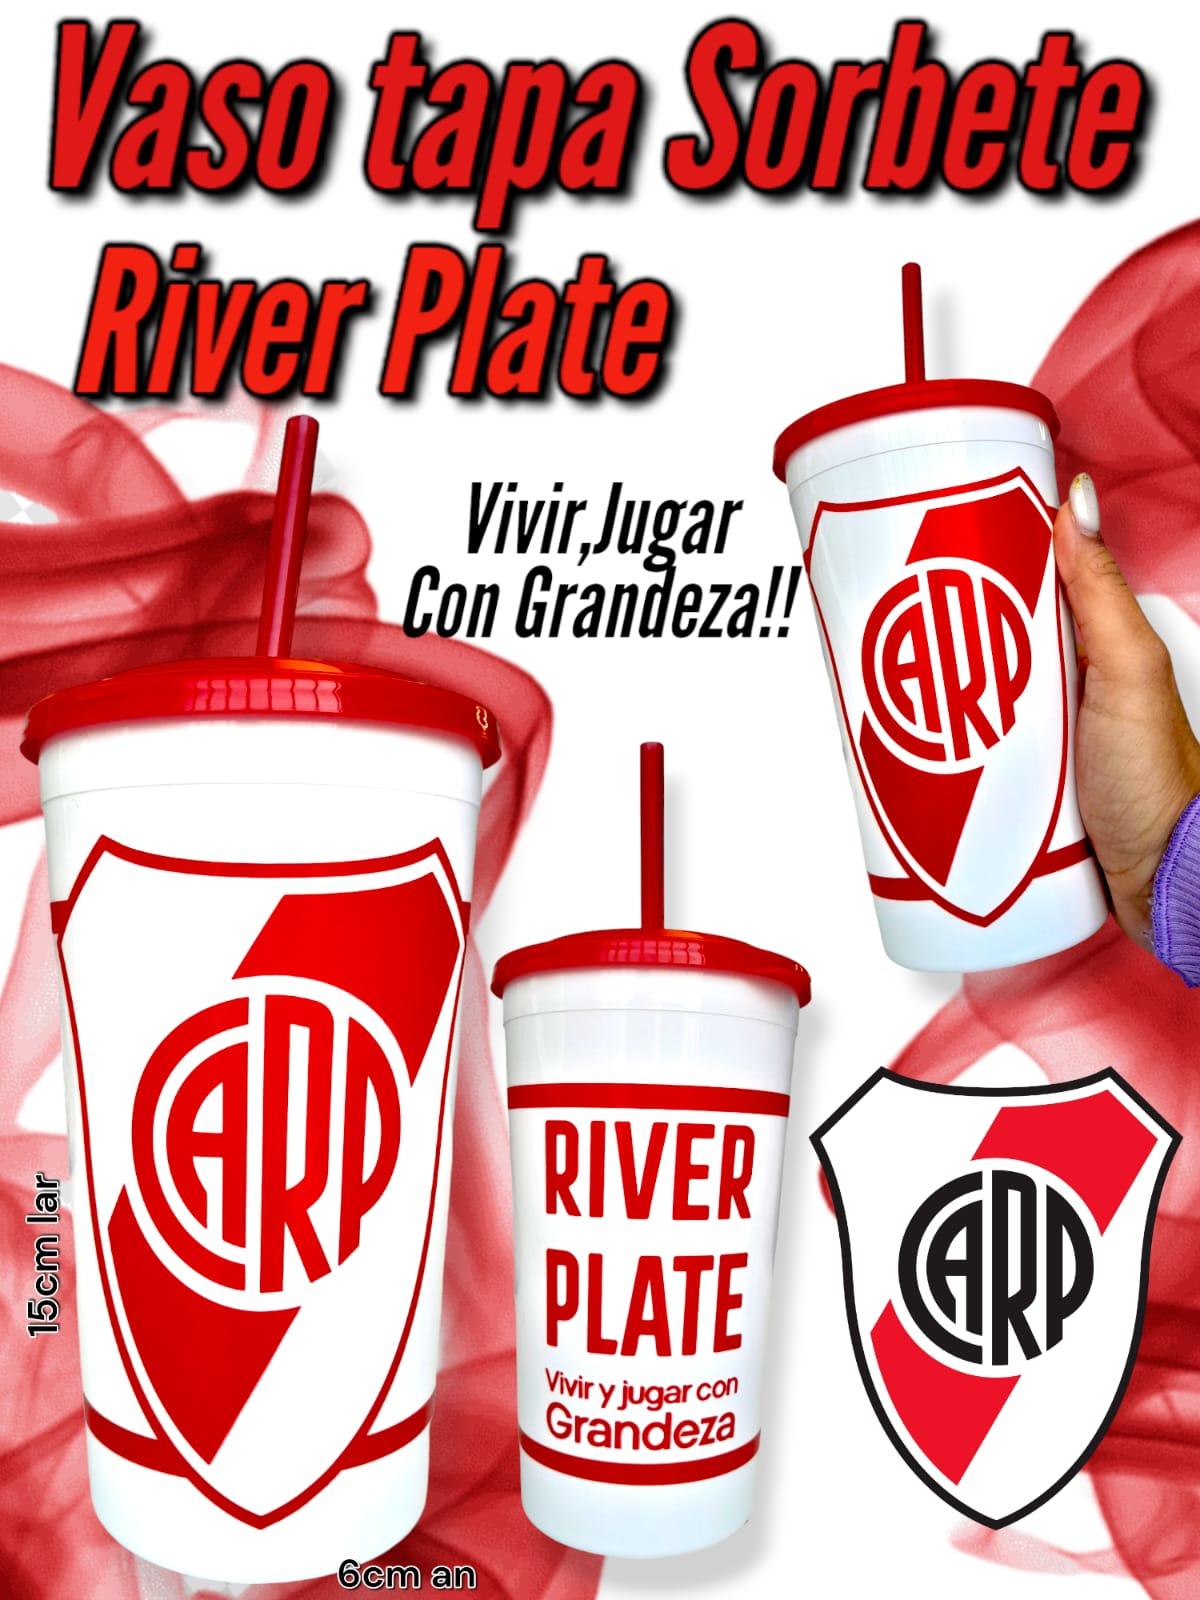 Vaso Tapa Sorbete River Plate 